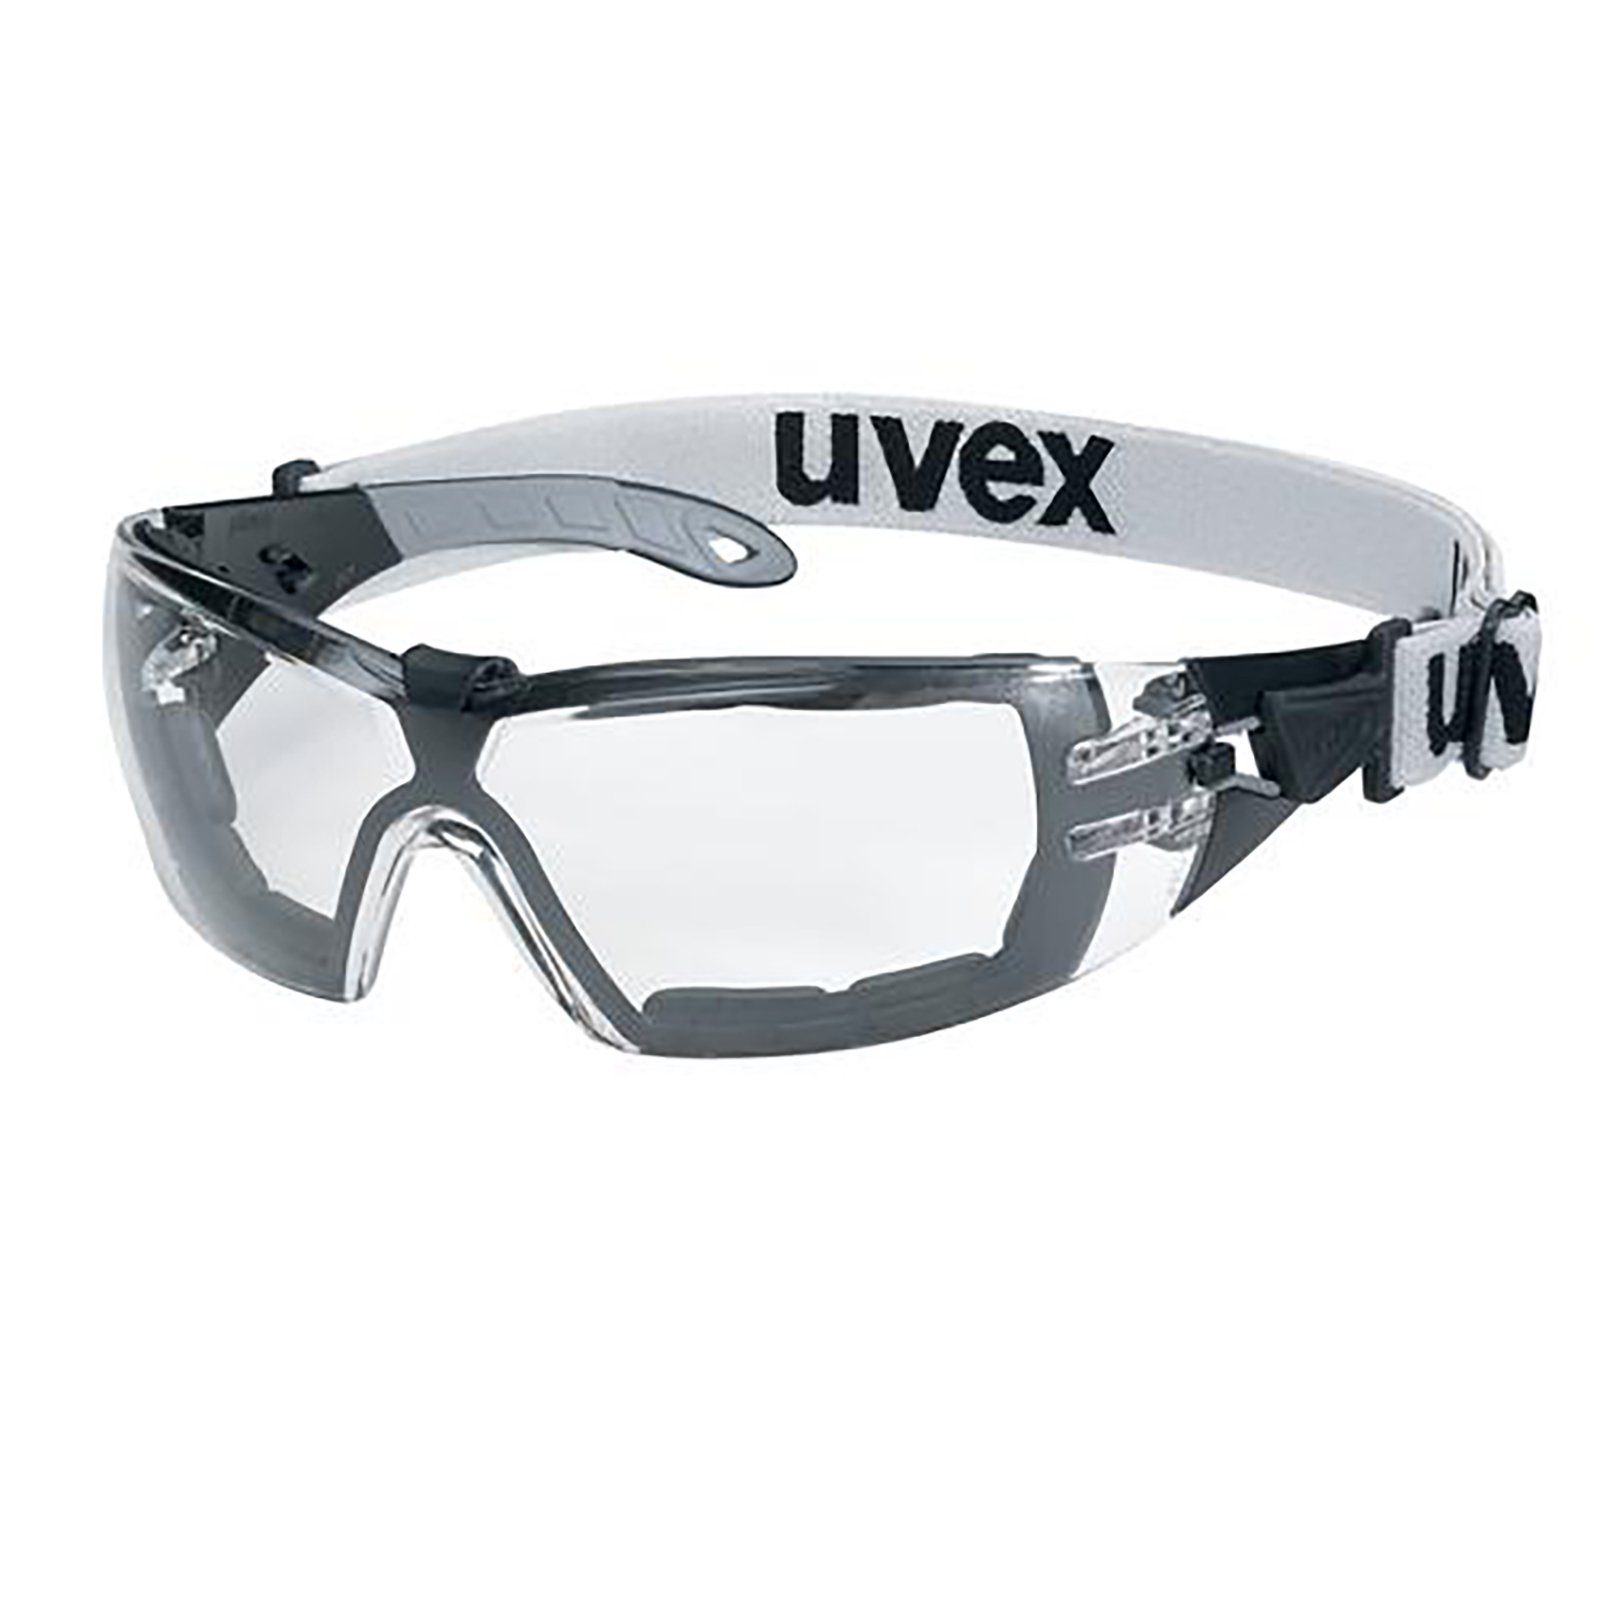 Uvex Arbeitsschutzbrille Bügelbrille pheos s guard sv ext. 9192680